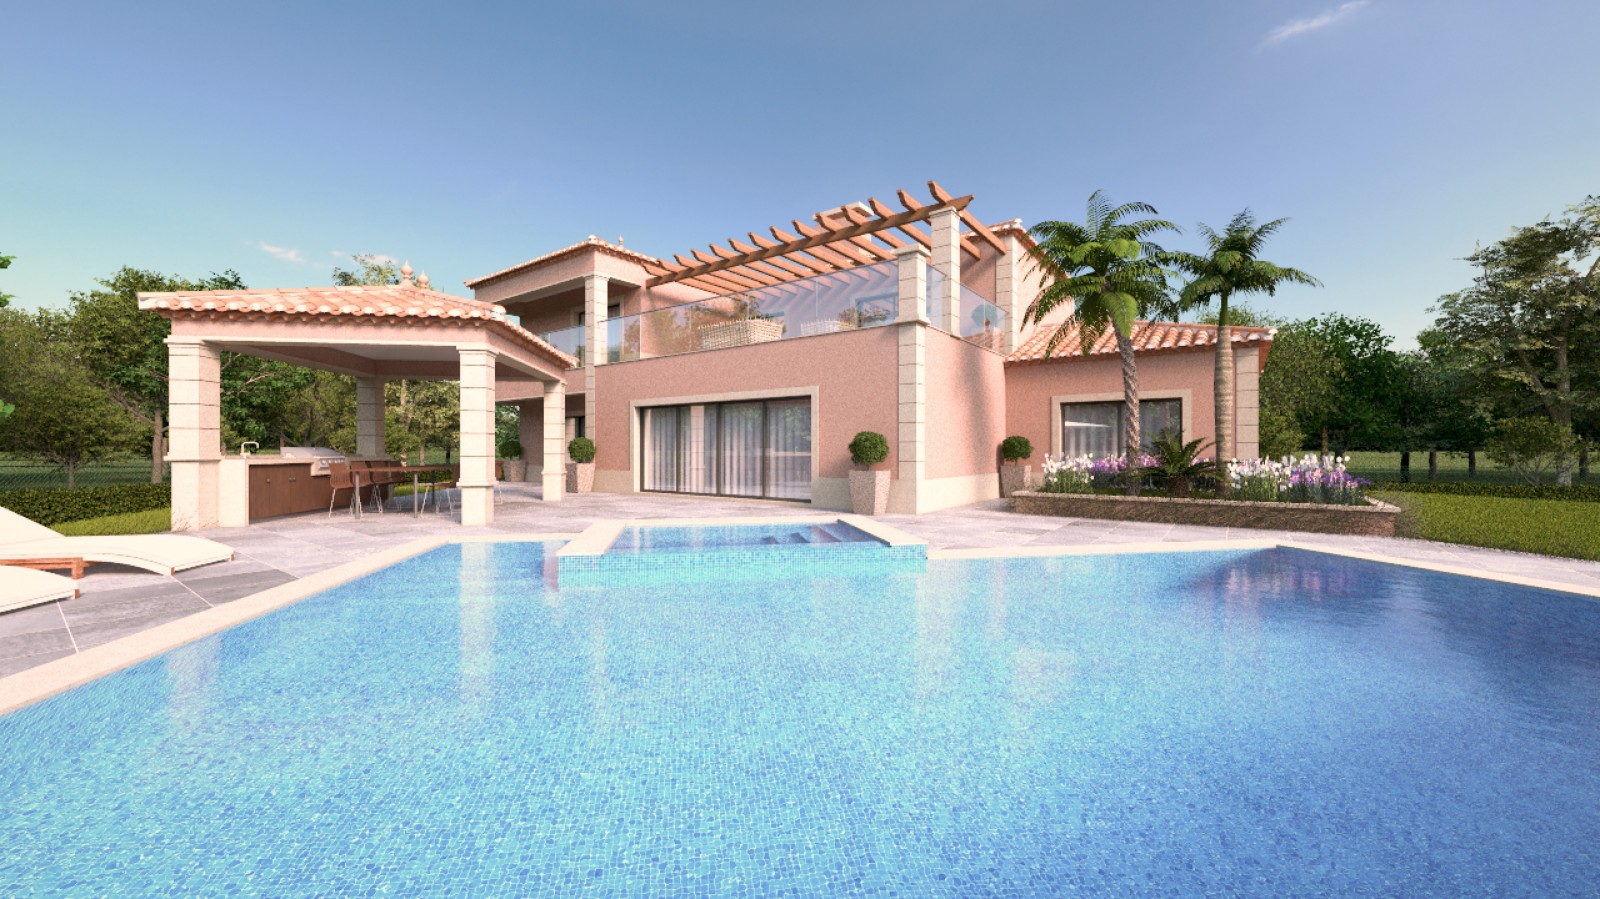 Moradia V4 com piscina, para venda em Portimão, Algarve